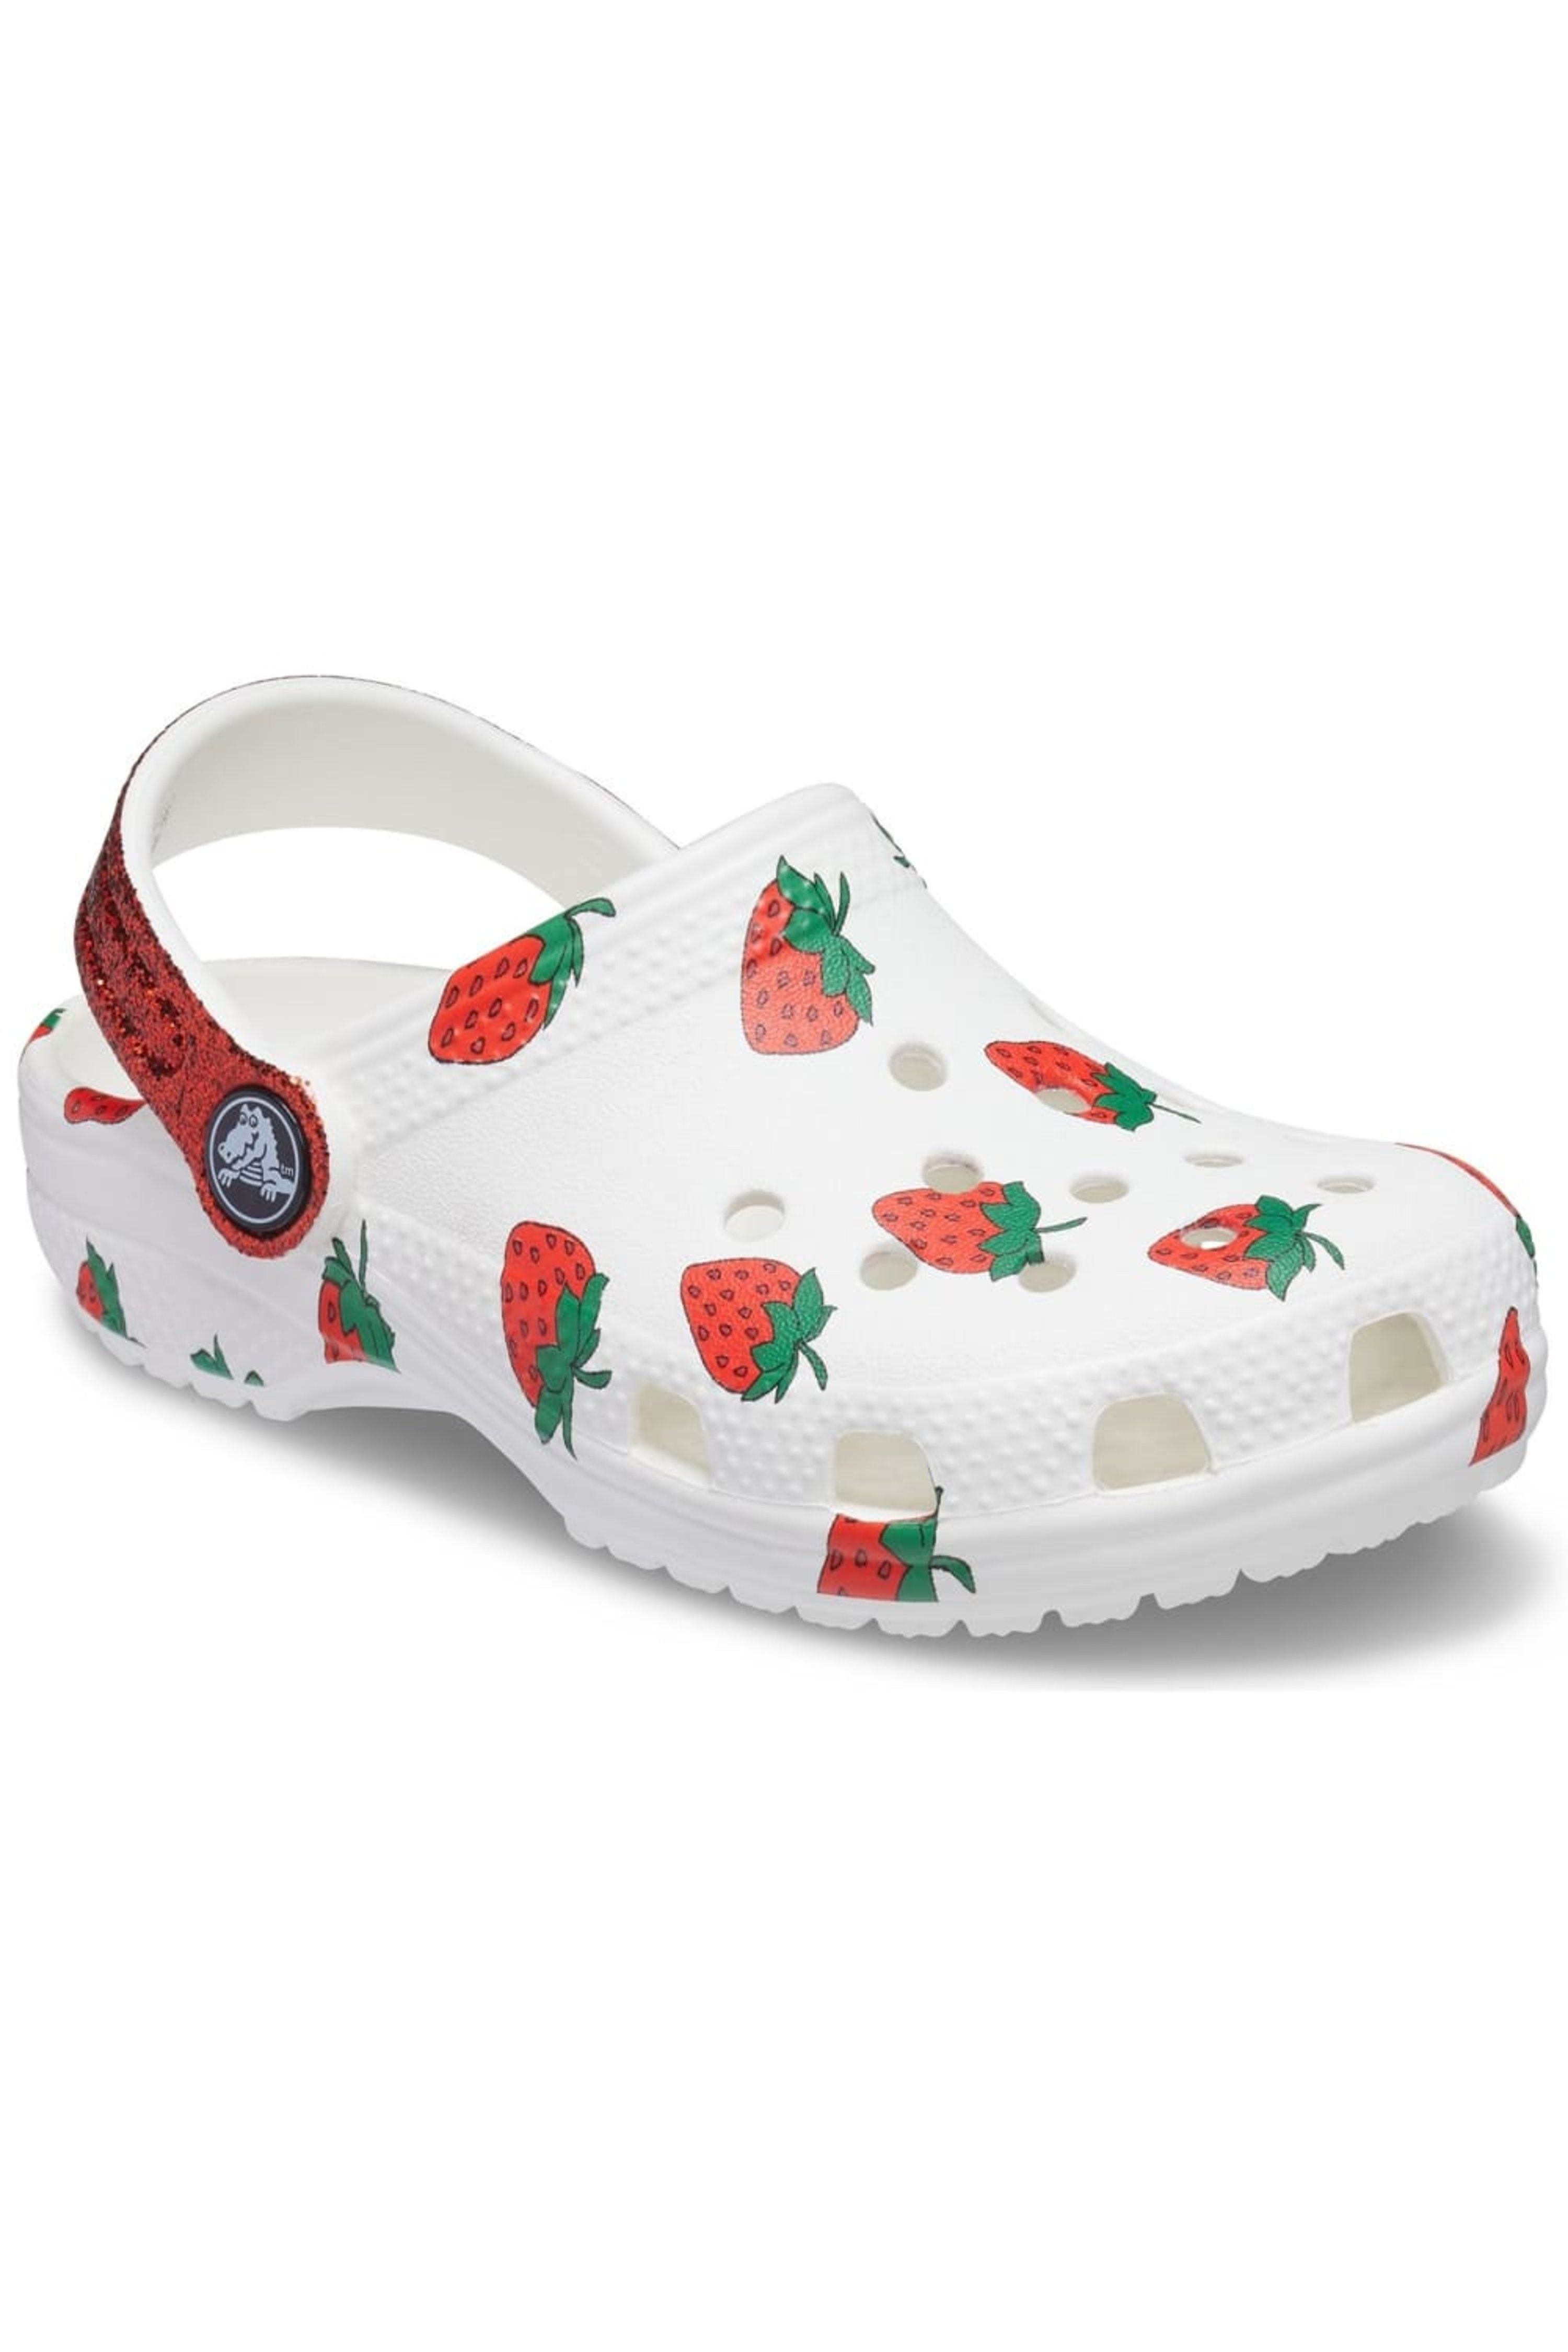 Crocs Girls Strawberry Clogs (White) - 10 - Also in: 2, 9, 5, 12, 6, 13, 11, 1, 8, 7 | Verishop